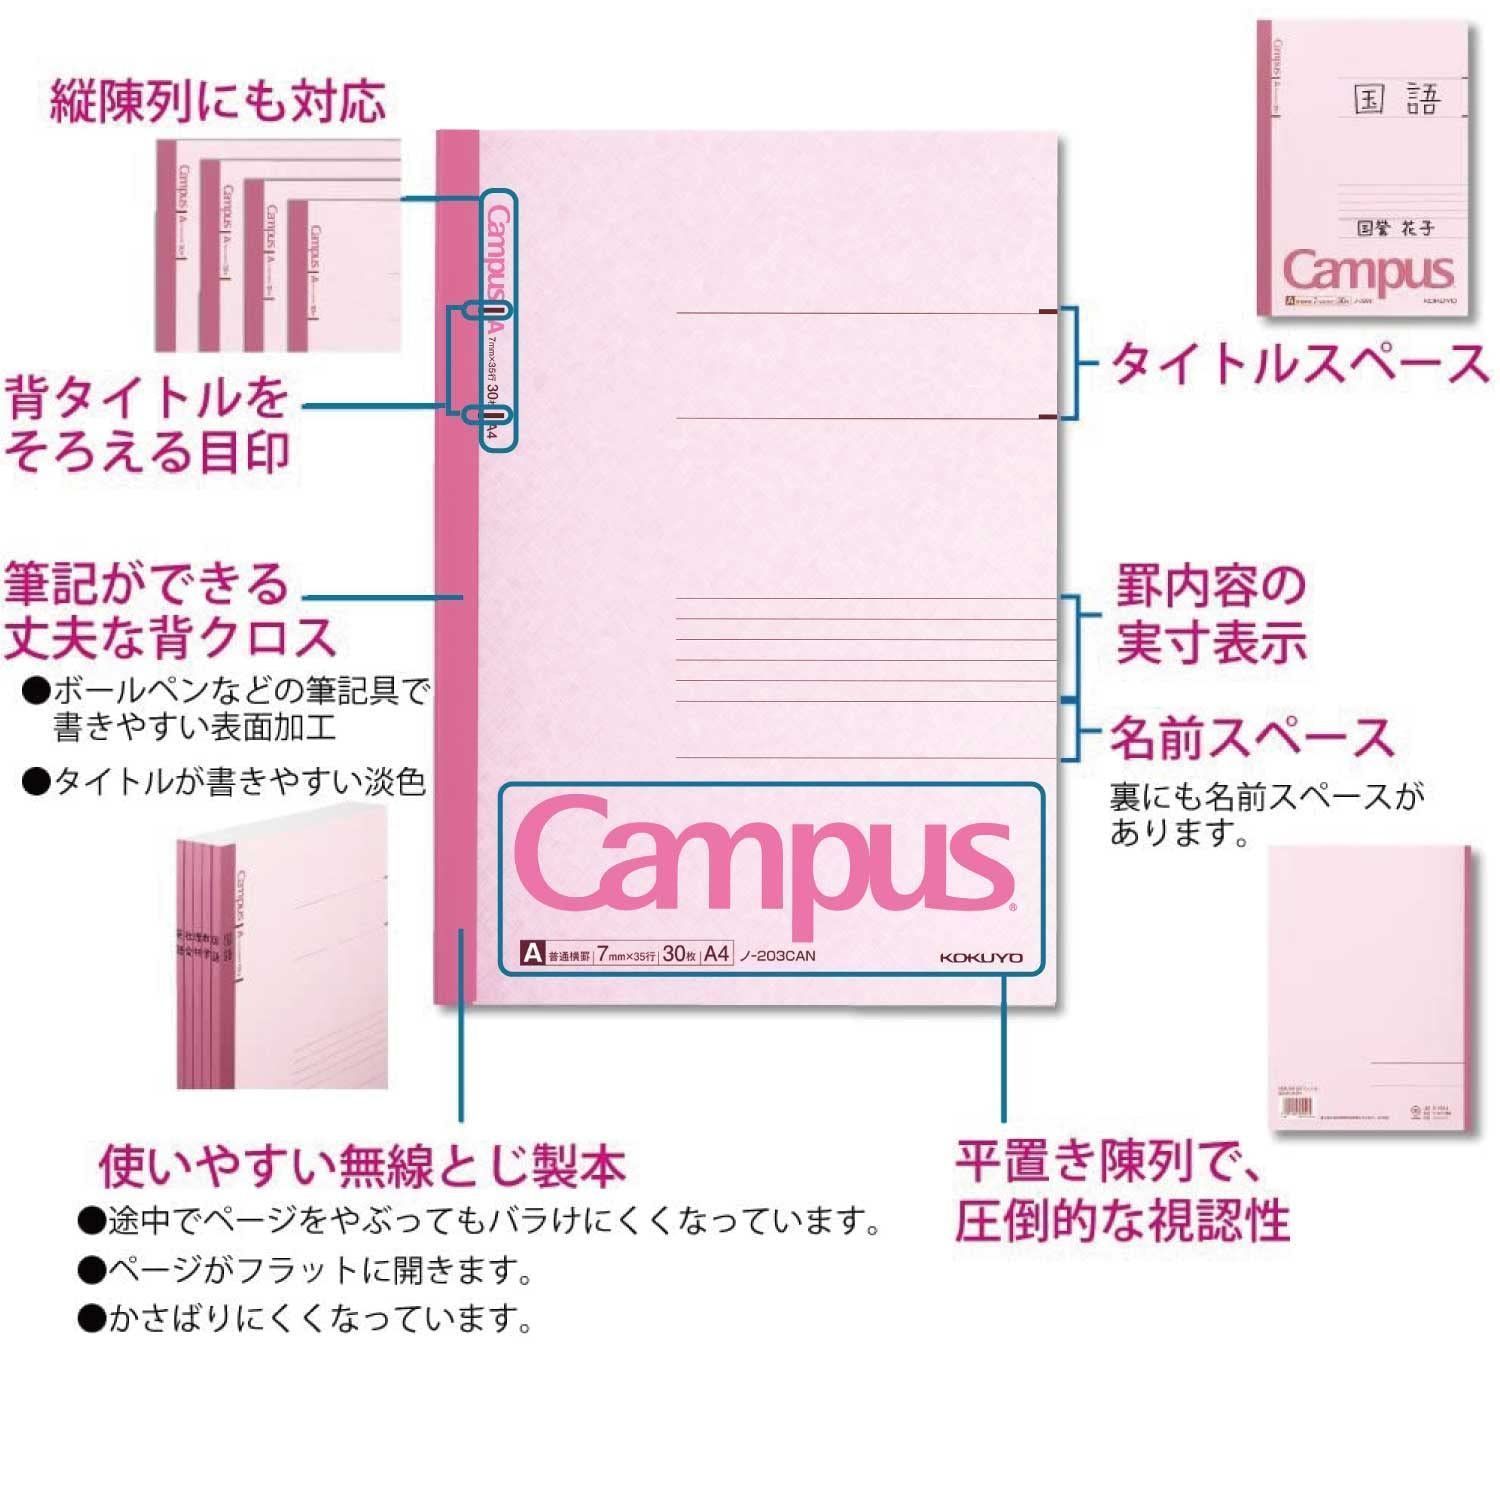 【新着商品】ノート キャンパスノート A4 カラー表紙 コクヨ 5色パック A罫 ノ-203CAX5